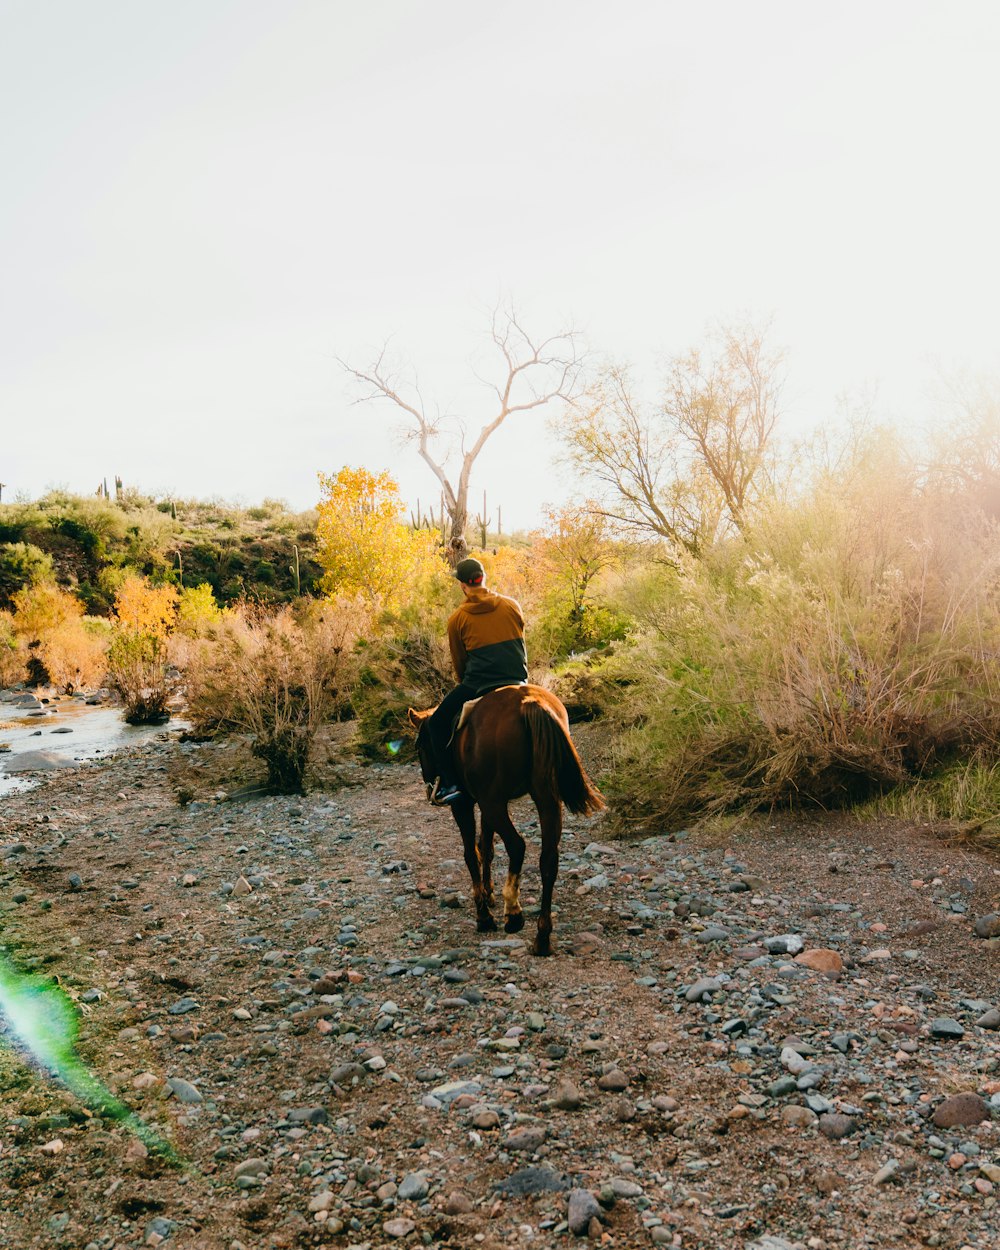 Un hombre montando a caballo por un camino de tierra